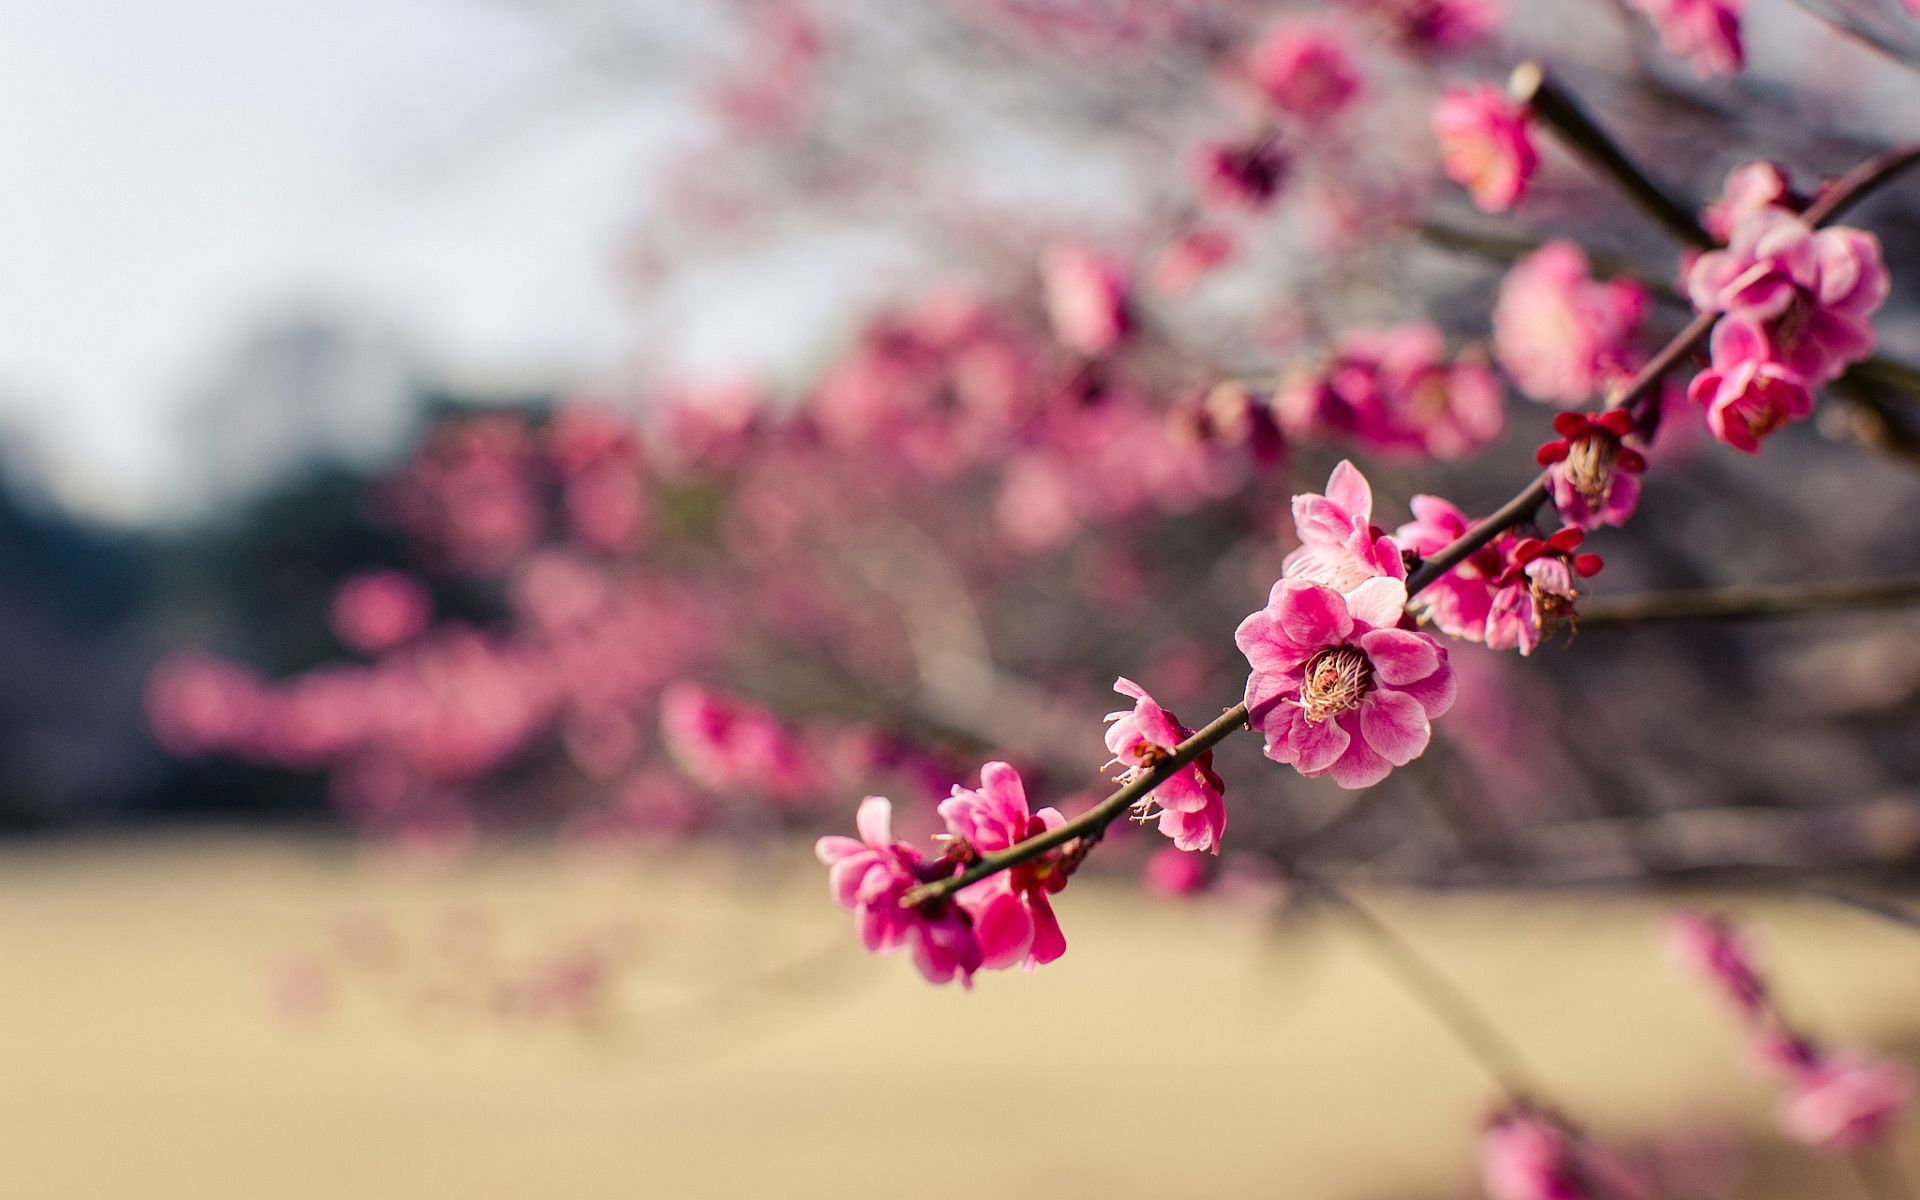 عکس فوق العاده زیبا از شکوفه های بهاری